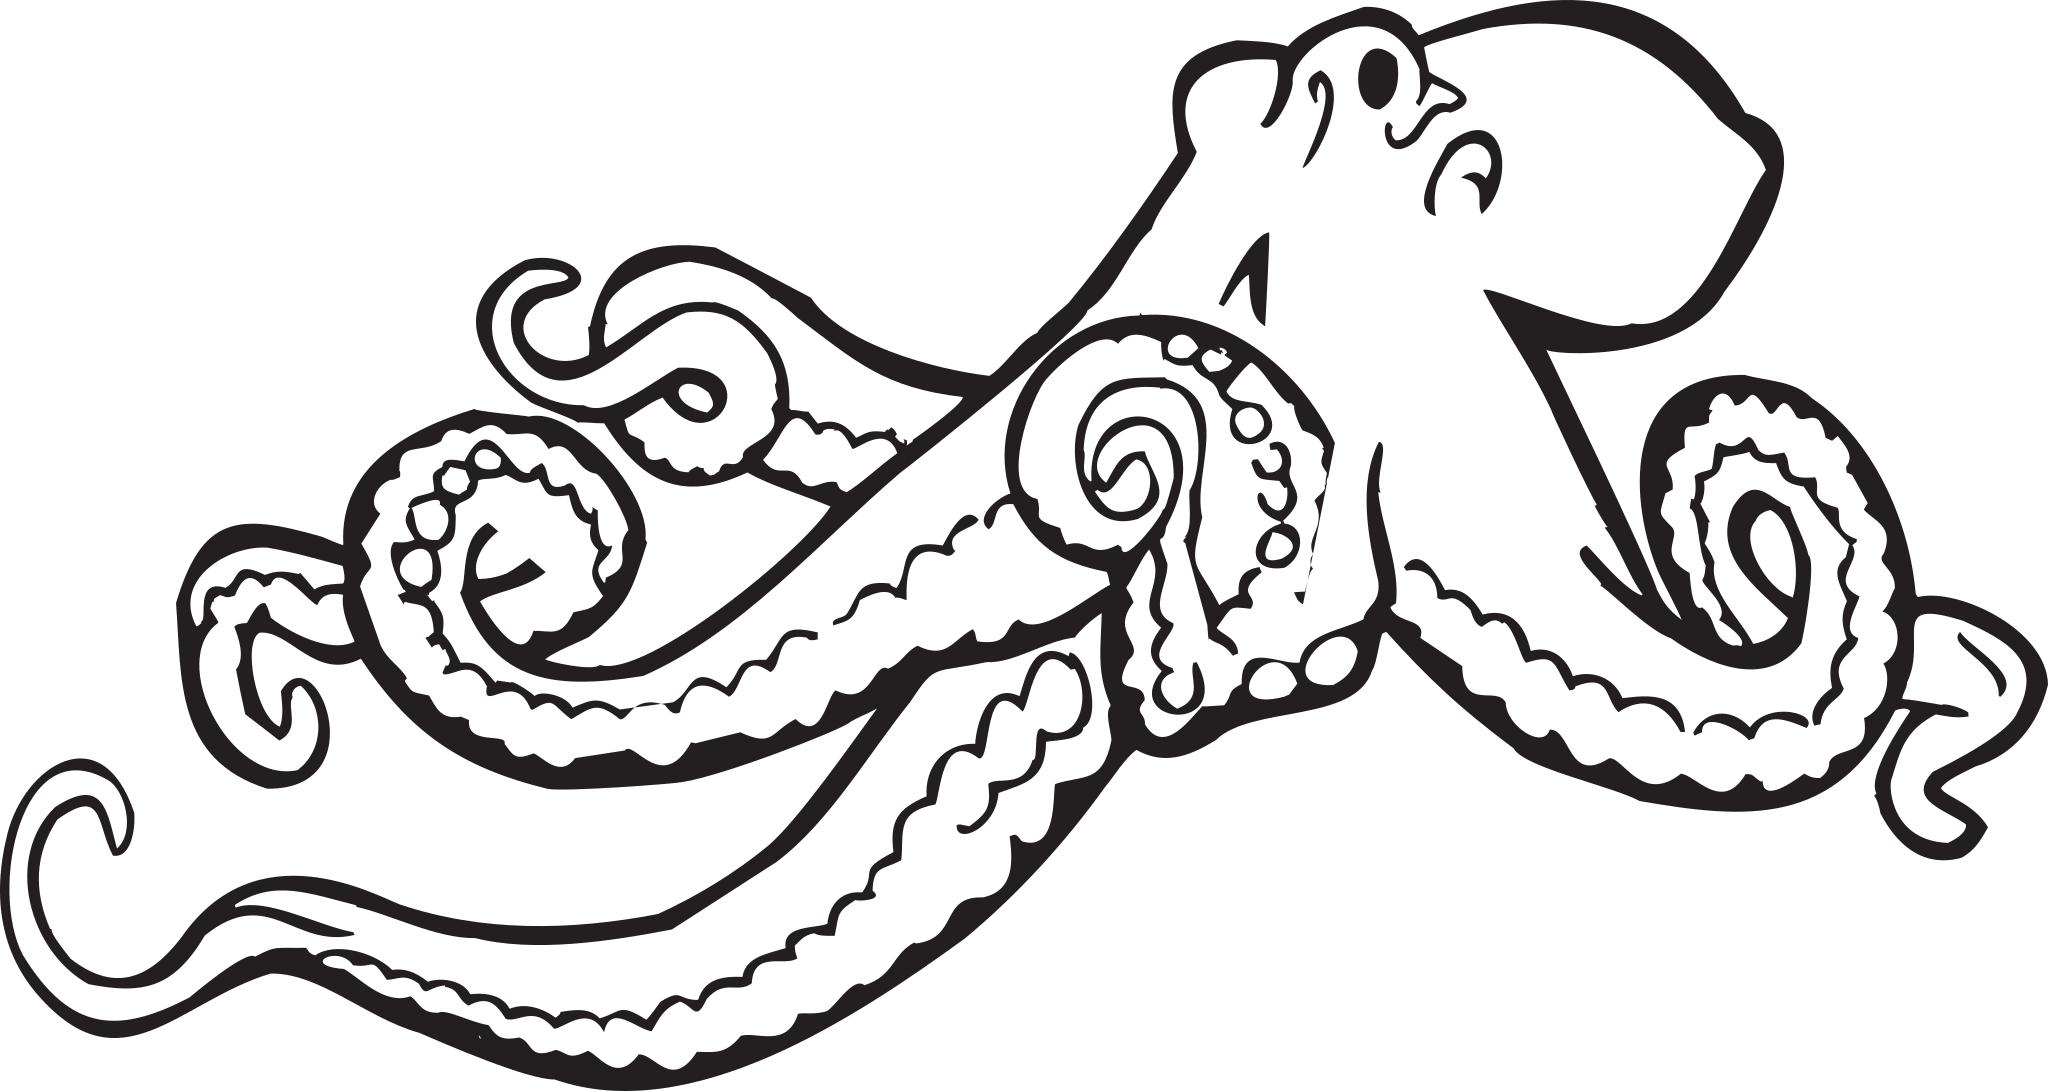 Octopus раскраска